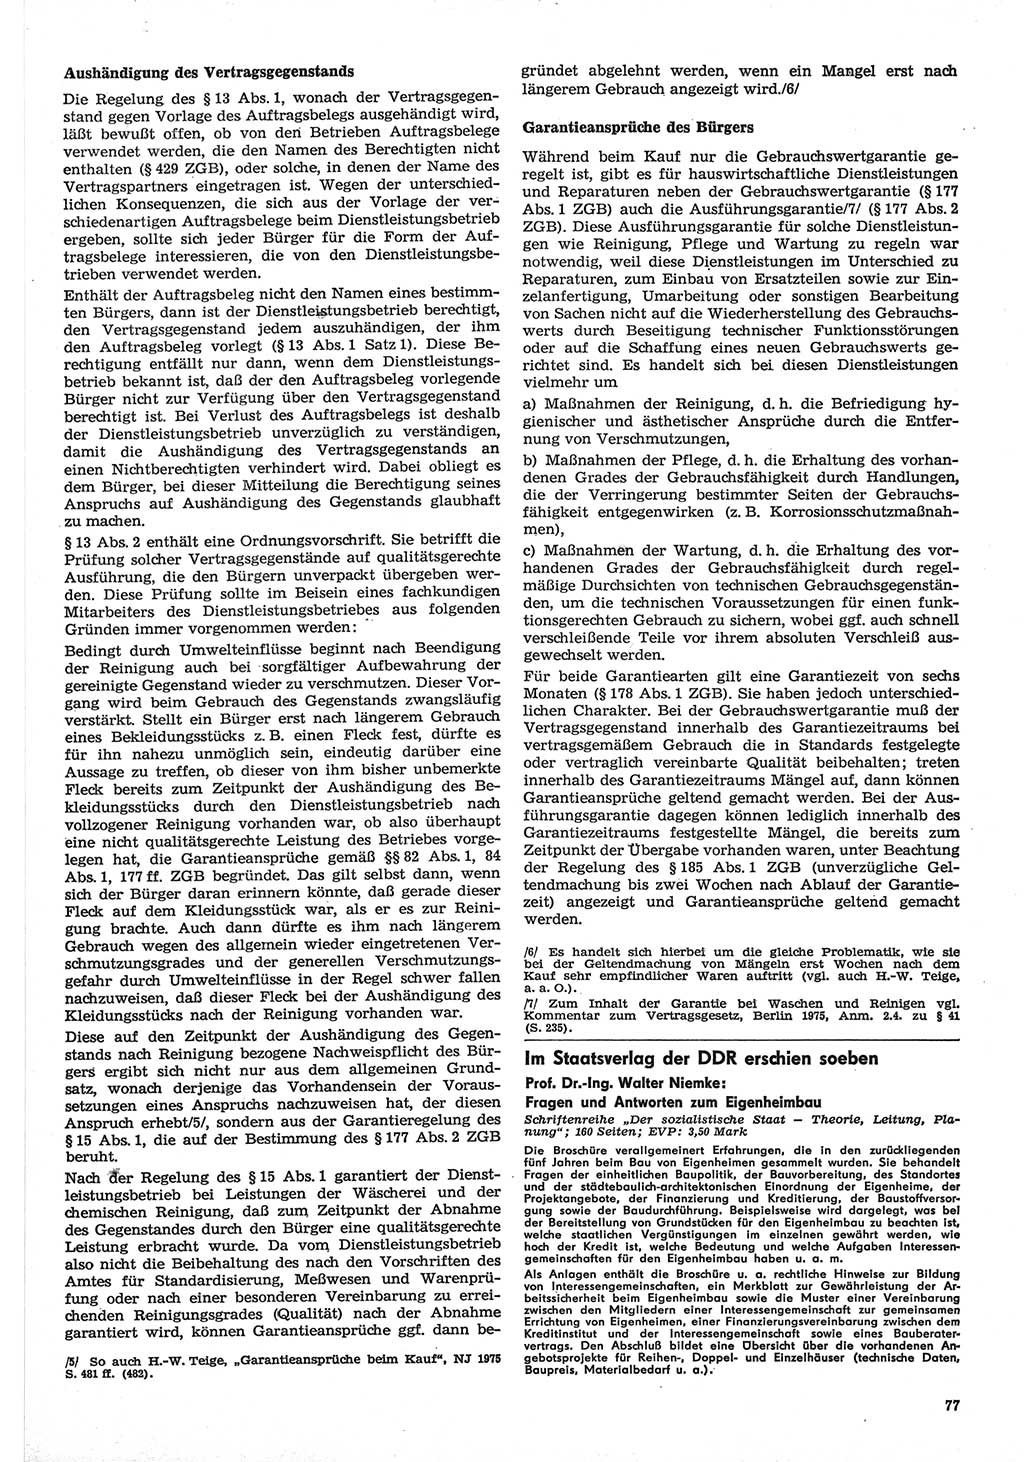 Neue Justiz (NJ), Zeitschrift für Recht und Rechtswissenschaft-Zeitschrift, sozialistisches Recht und Gesetzlichkeit, 31. Jahrgang 1977, Seite 77 (NJ DDR 1977, S. 77)